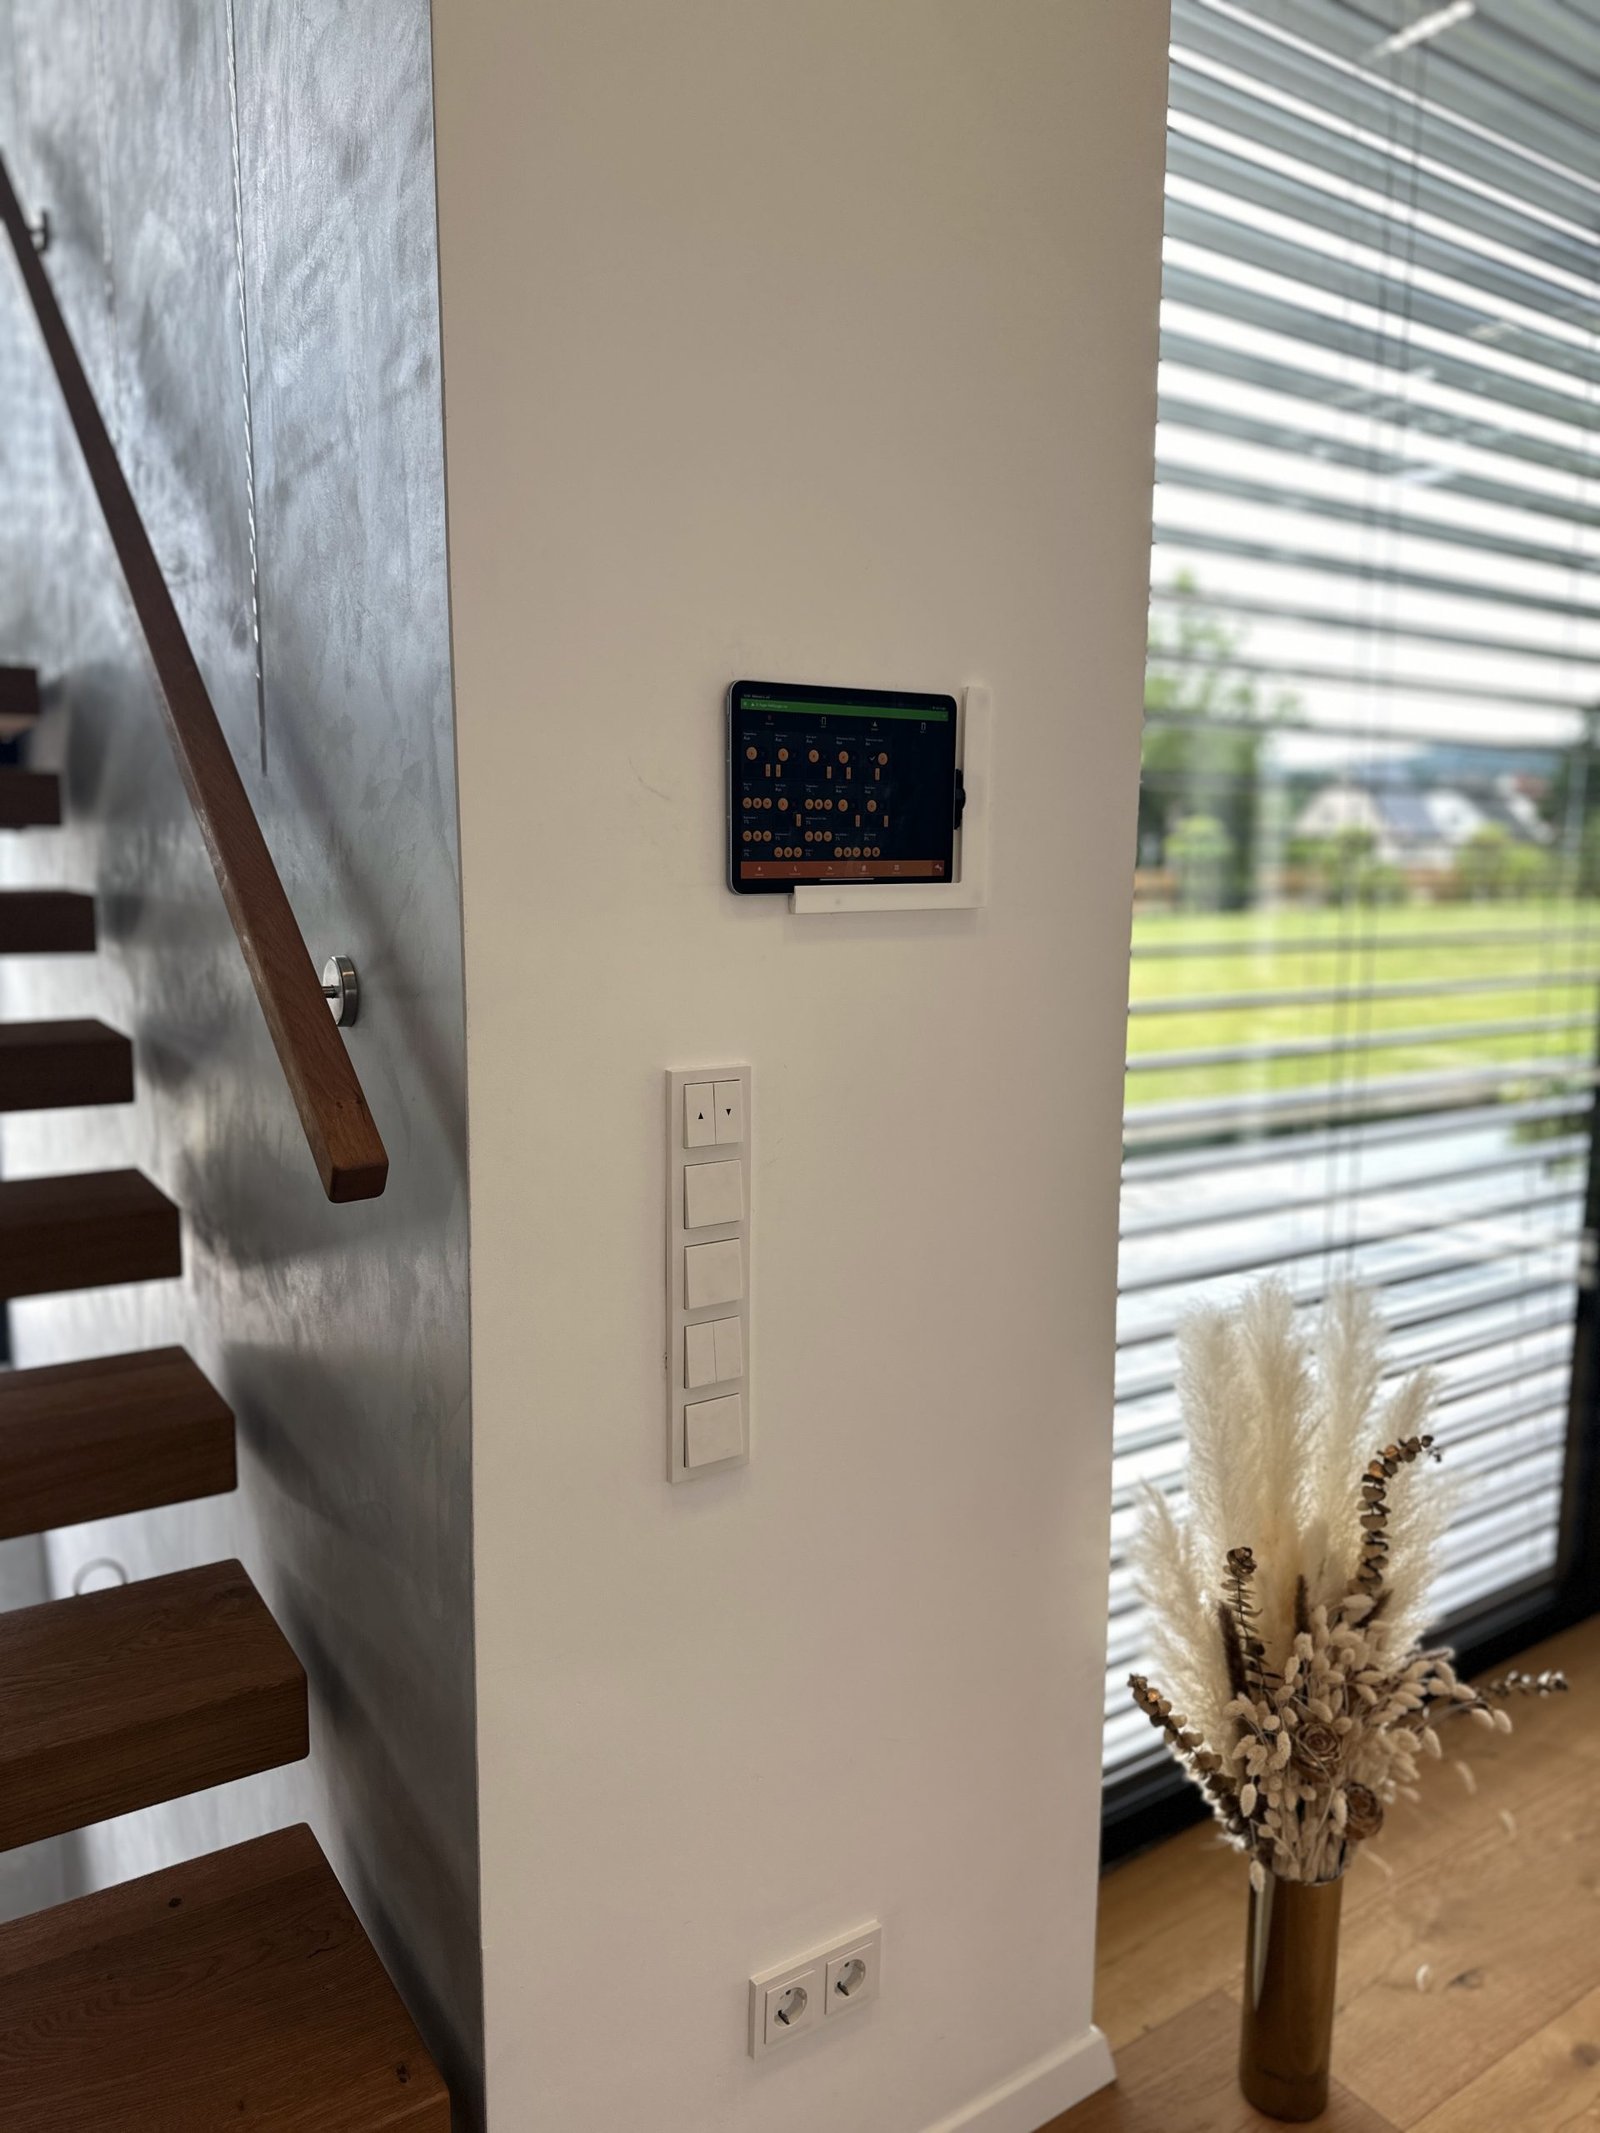 IPad an Wandhalterung für Smart Home steuerung